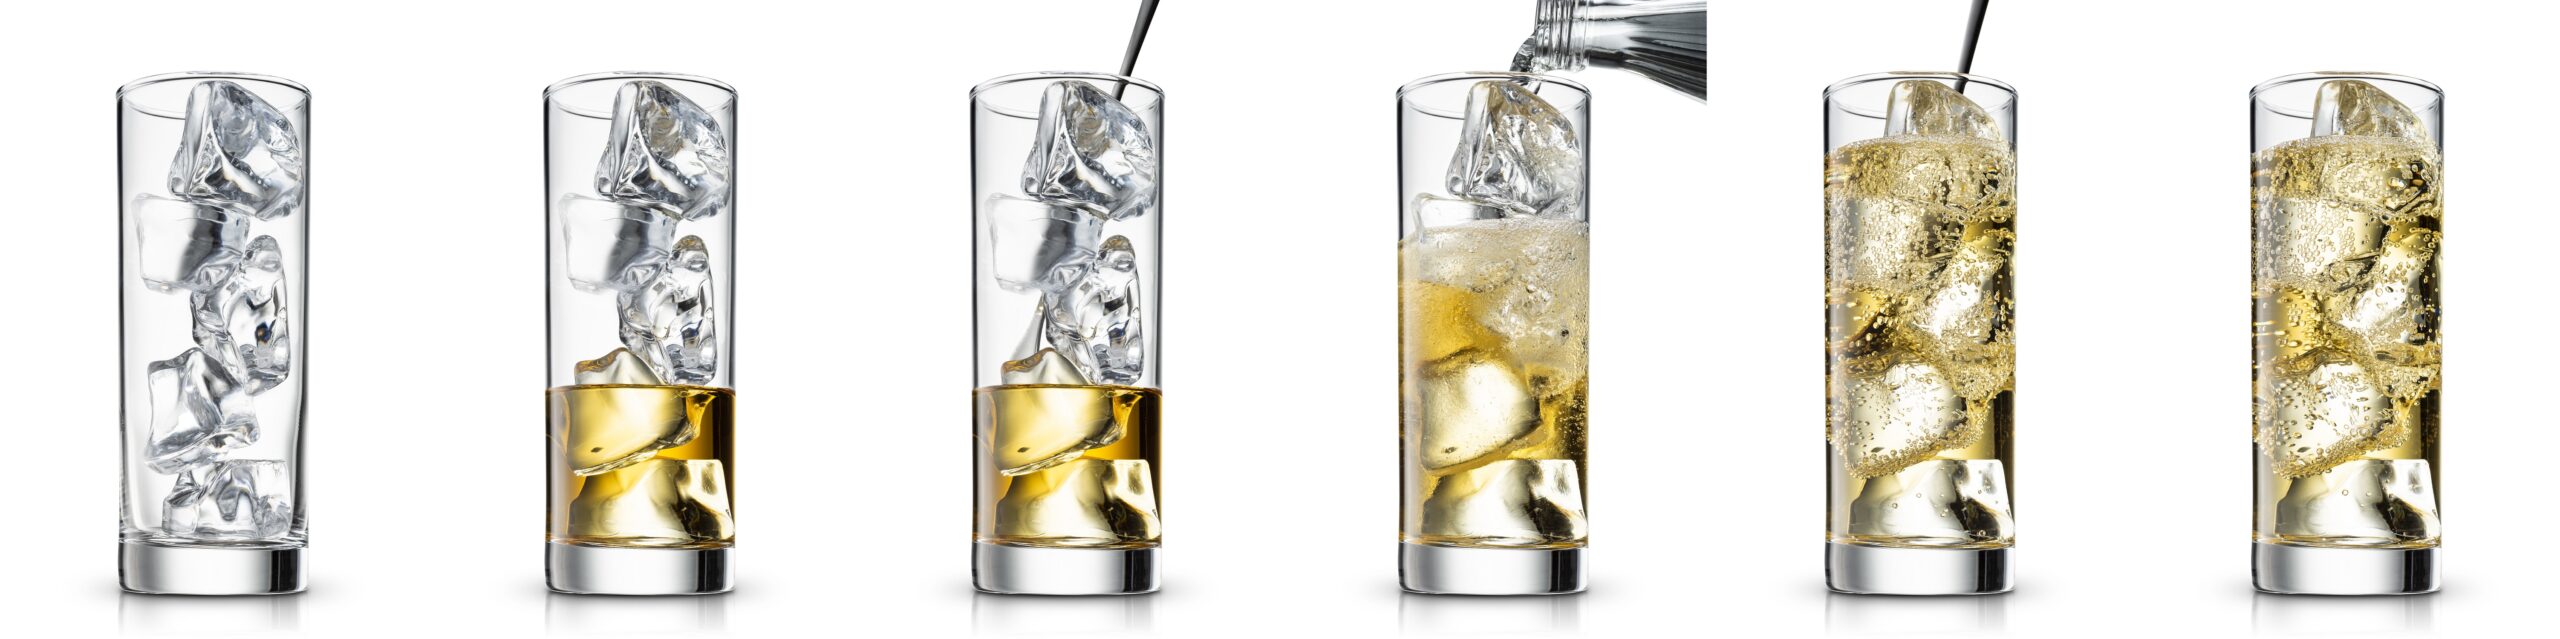 ６つの透明のグラスに銀色のピッチャーでそれぞれ違う量の飲み物が注がれている